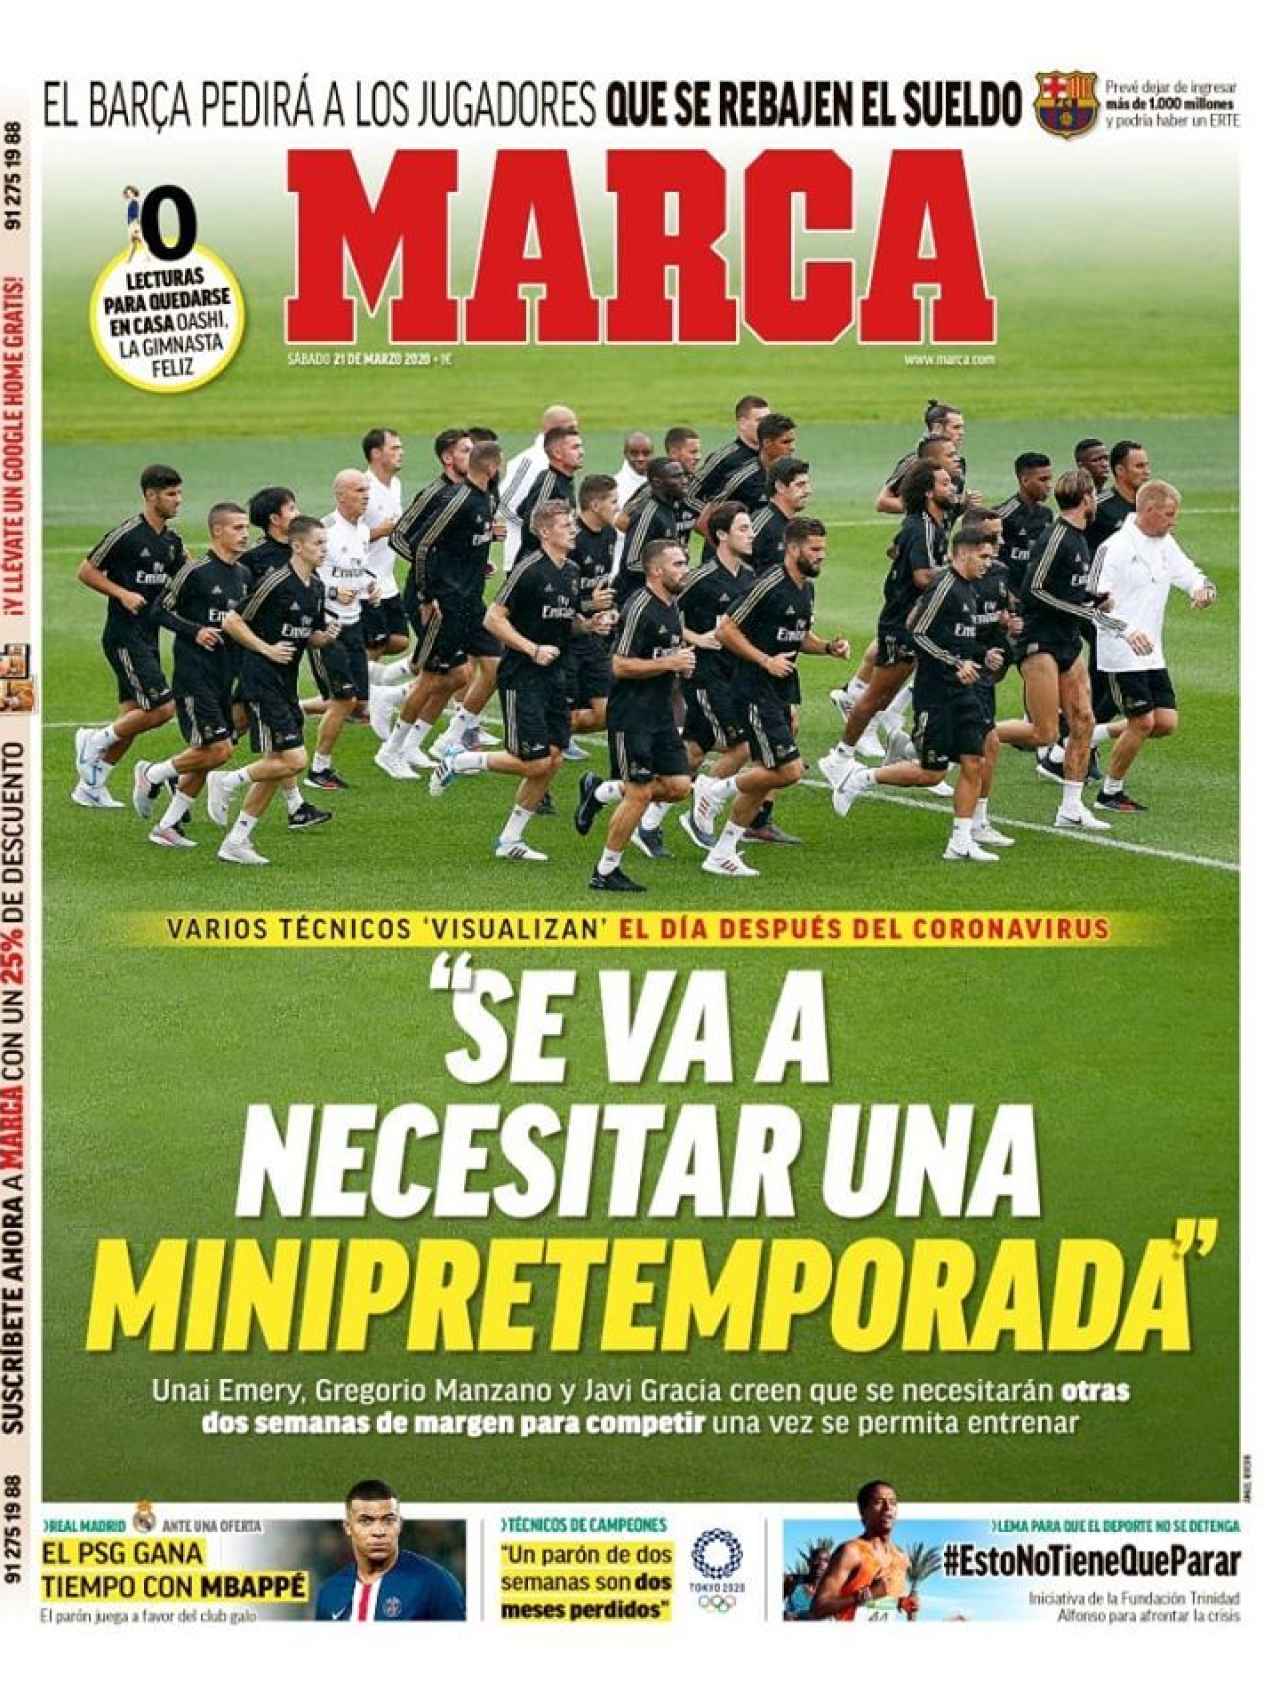 La portada del diario Marca (21/03/2020)